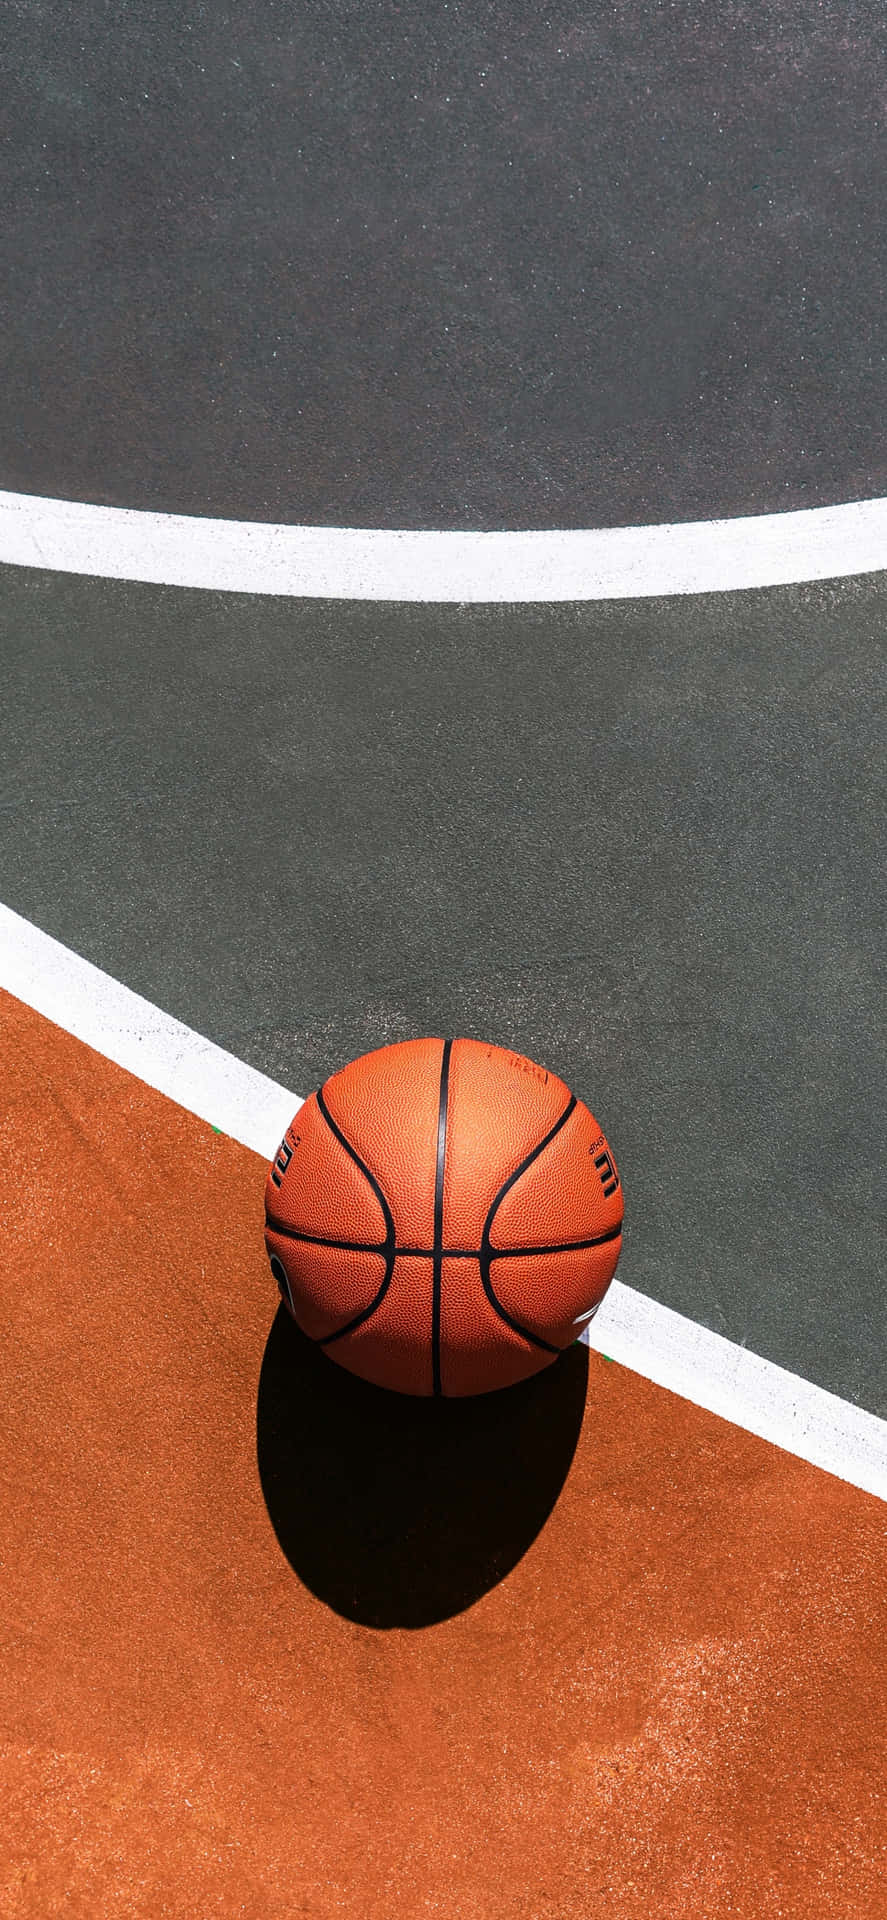 Iphonexs Basketball Nba Draft Bakgrund.